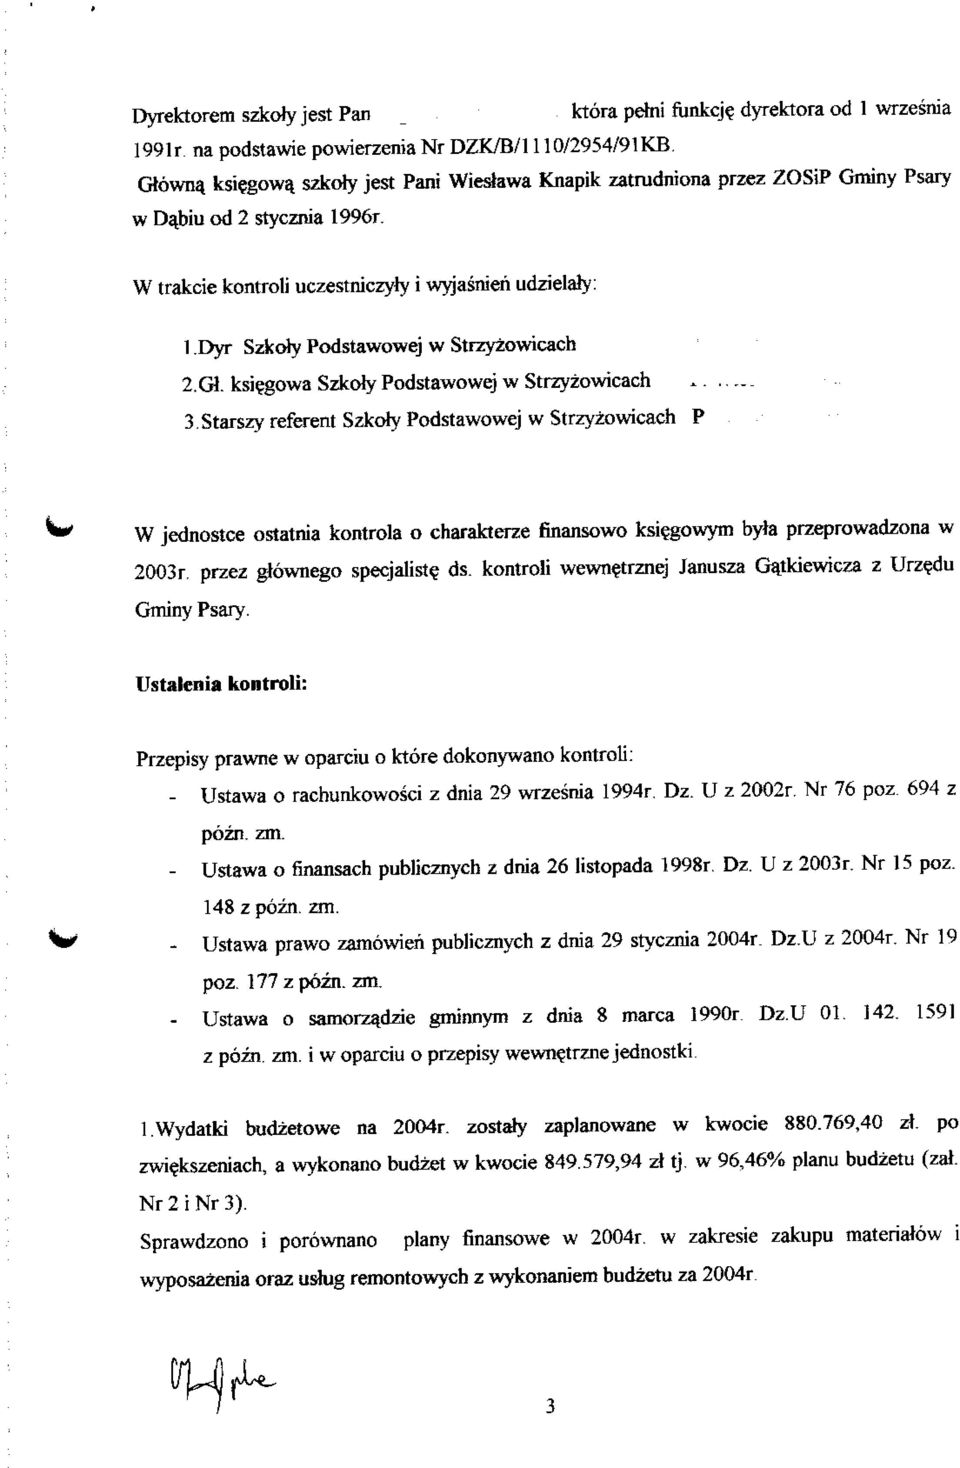 G1 ksiegowa Szkoly Podstawowej w Strzyzowicach 3Starszy referent Szkoly Podstawowej w Strzyzowicach P W jednostce ostatnia kontrola o charakterze finansowo ksiegowym byla przeprowadzona w 2003r.